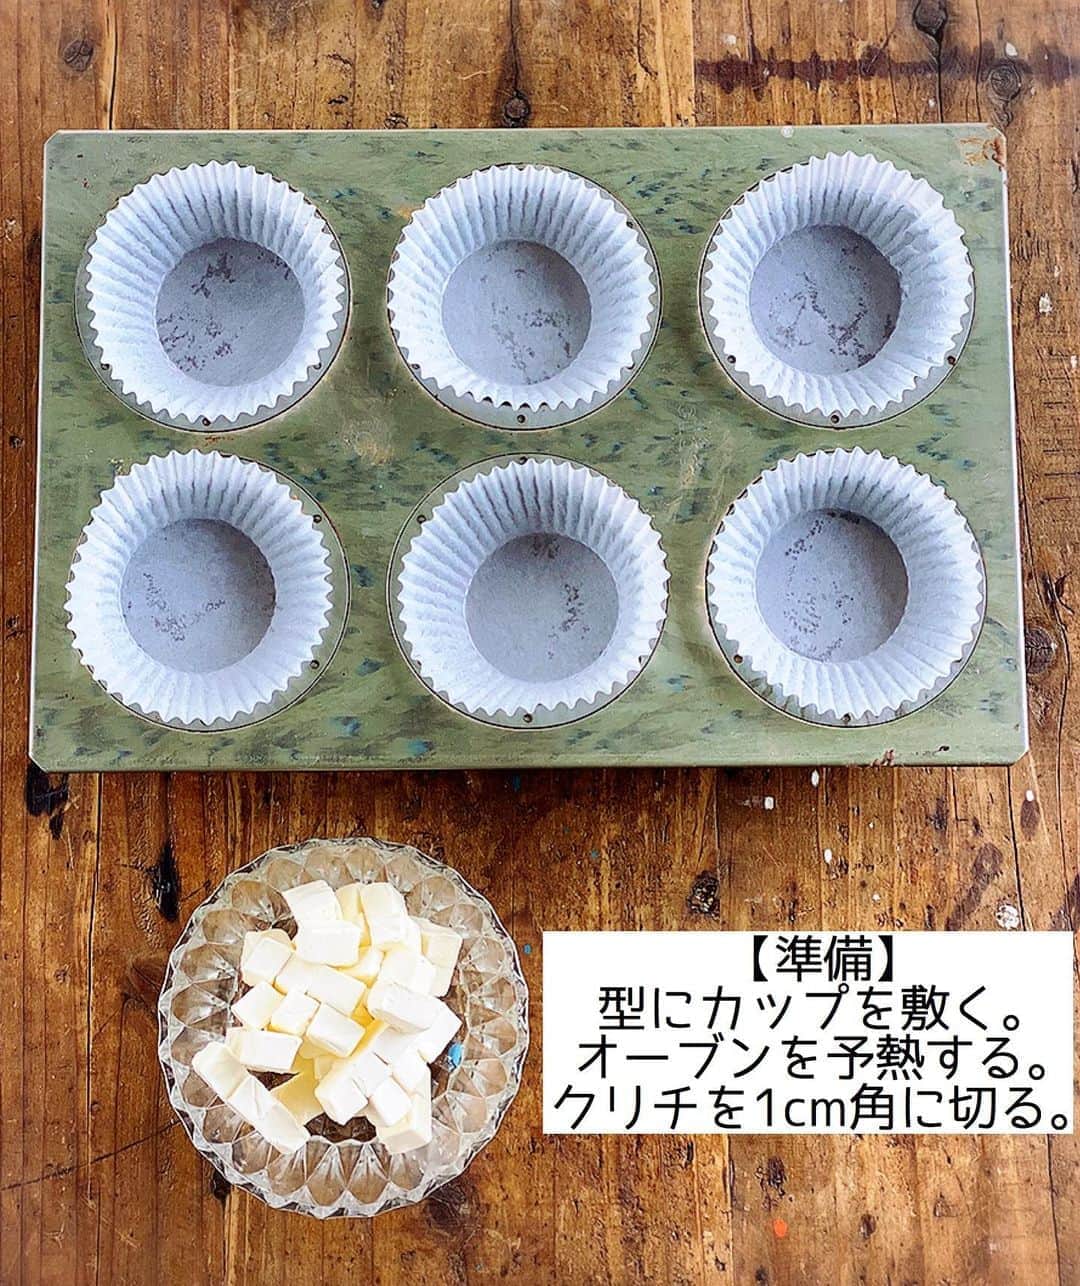 Mizuki【料理ブロガー・簡単レシピ】さんのインスタグラム写真 - (Mizuki【料理ブロガー・簡単レシピ】Instagram)「・﻿ 【レシピ】ーーーーーーーーーーーーー﻿ ホットケーキミックスで！﻿ ブルーベリークリームチーズマフィン﻿ ーーーーーーーーーーーーーーーーーー﻿ ﻿ ﻿ ﻿ おはようございます(*^^*)﻿ ﻿ 今日ご紹介させていただくのは﻿ ホットケーキミックスで作る﻿ ブルーベリークリームチーズマフィン♩﻿ コクのあるチーズの風味と﻿ ブルーベリーの酸味が好相性の﻿ 爽やかなスイーツです♡♡﻿ ﻿ もちろん作り方は超簡単(*´艸`)﻿ バター不使用！混ぜて焼くだけ！﻿ ブルーベリーは冷凍でもOKなので﻿ お気軽にお試し下さいね(*^^*)﻿ ﻿ ﻿ ﻿ ーーーーーーーーーーーーーーーーーーーー﻿ 【マフィン型1台(6個)分】﻿ ●卵...1個﻿ ●砂糖...大2﻿ ●牛乳...60ml﻿ ●サラダ油...60g﻿ ホットケーキミックス...150g﻿ クリームチーズ...70g﻿ ブルーベリー...70g﻿ ﻿ (準備) 型にグラシンカップを敷く。オーブンを180度に予熱する。クリームチーズは1cm角に切る。﻿ 1.ボウルに●を入れて泡立て器でよく混ぜる。続けてホットケーキミックスを加えてゴムべらで混ぜ、粉っぽさが残っている内にクリームチーズとブルーベリー(飾り用に一部残す)も加えて混ぜる。﻿ 2.型に注ぎ、残したクリームチーズとブルーベリーをのせ、予熱したオーブンで20分焼く。﻿ ーーーーーーーーーーーーーーーーーーーー﻿ ﻿ ﻿ ﻿ 《ポイント》﻿ ♦︎クリームチーズとブルーベリーの量は増減しても大丈夫です♩﻿ ♦︎冷凍ブルーベリーを使用する場合は凍ったまま加えて下さい♩﻿ ♦︎焼けたら型から取り出し、アミにのせて冷まして下さい♩﻿ ♦︎ブルーベリー入りなので冷蔵庫保存が安心です♩﻿ ﻿ ﻿ ﻿ ﻿ ﻿ ﻿ ＿＿＿＿＿＿＿＿＿＿＿＿＿＿＿＿＿＿＿﻿ 📕6刷重版しました📕﻿ 簡単・時短！ 毎日のごはんがラクになる﻿ ✨🦋 【 #Mizukiの今どき和食 】🦋✨﻿ ＿＿＿＿＿＿＿＿＿＿＿＿＿＿＿＿＿＿＿﻿ なるべく少ない材料で﻿ 手間も時間も省きながら﻿ 簡単にできるおいしい和食レシピ♩﻿ 簡単に失敗なくマスターできる一冊で﻿ もっと気軽に、カジュアルに﻿ 和食を楽しんで下さいね(*^^*)﻿ ＿＿＿＿＿＿＿＿＿＿＿＿＿＿＿＿＿＿＿﻿ ﻿ ﻿ ﻿ ＿＿＿＿＿＿＿＿＿＿＿＿＿＿＿＿＿＿＿﻿ 🎀6刷重版しました🎀﻿ 混ぜて焼くだけ。はじめてでも失敗しない！﻿ 【#ホットケーキミックスのお菓子 】﻿ ﻿ 一冊まるっとホケミスイーツ♩﻿ 普段のおやつから﻿ 特別な日にも使えるレシピを﻿ この一冊に詰め込みました(*^^*)﻿ ホットケーキミックスを使えば﻿ 簡単に本格的なお菓子が作れますよ♡﻿ ＿＿＿＿＿＿＿＿＿＿＿＿＿＿＿＿＿﻿ ﻿ ﻿ ﻿ ﻿ ￣￣￣￣￣￣￣￣￣￣￣￣￣￣￣￣￣￣﻿ レシピを作って下さった際や﻿ レシピ本についてのご投稿には﻿ タグ付け( @mizuki_31cafe )して﻿ お知らせいただけると嬉しいです😊💕﻿ ＿＿＿＿＿＿＿＿＿＿＿＿＿＿＿＿＿＿﻿ ﻿ ﻿ ﻿ ﻿ ﻿ #ホットケーキミックス#マフィン#お菓子作り#バターなし#お菓子作りならコッタ#Mizuki#簡単レシピ#時短レシピ#節約レシピ#料理#レシピ#フーディーテーブル#マカロニメイト#おうちごはん#デリスタグラマー#料理好きな人と繋がりたい#食べ物#料理記録#おうちごはんlover#写真好きな人と繋がりたい#foodpic#cooking#recipe#lin_stagrammer#foodporn#yummy#ブルーベリークリームチーズマフィンm」8月9日 7時21分 - mizuki_31cafe